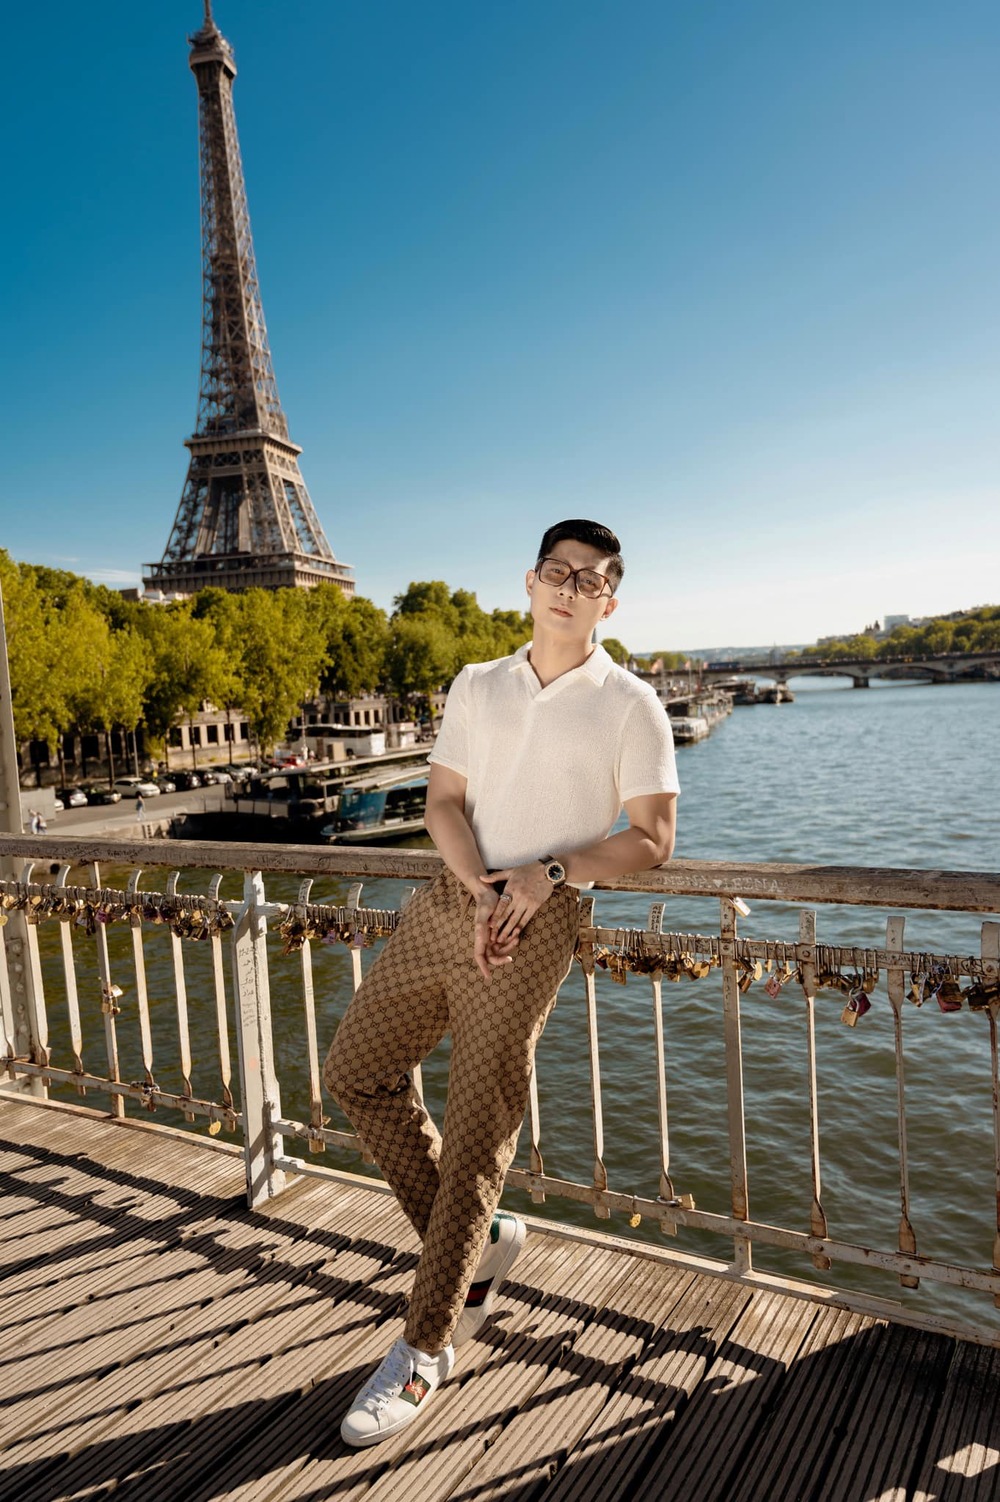  
Lâm Bảo Châu chụp ảnh bên tháp Eiffel với phong cách, thần thái chuyên nghiệp. (Ảnh: Facebook Lâm Bảo Châu)